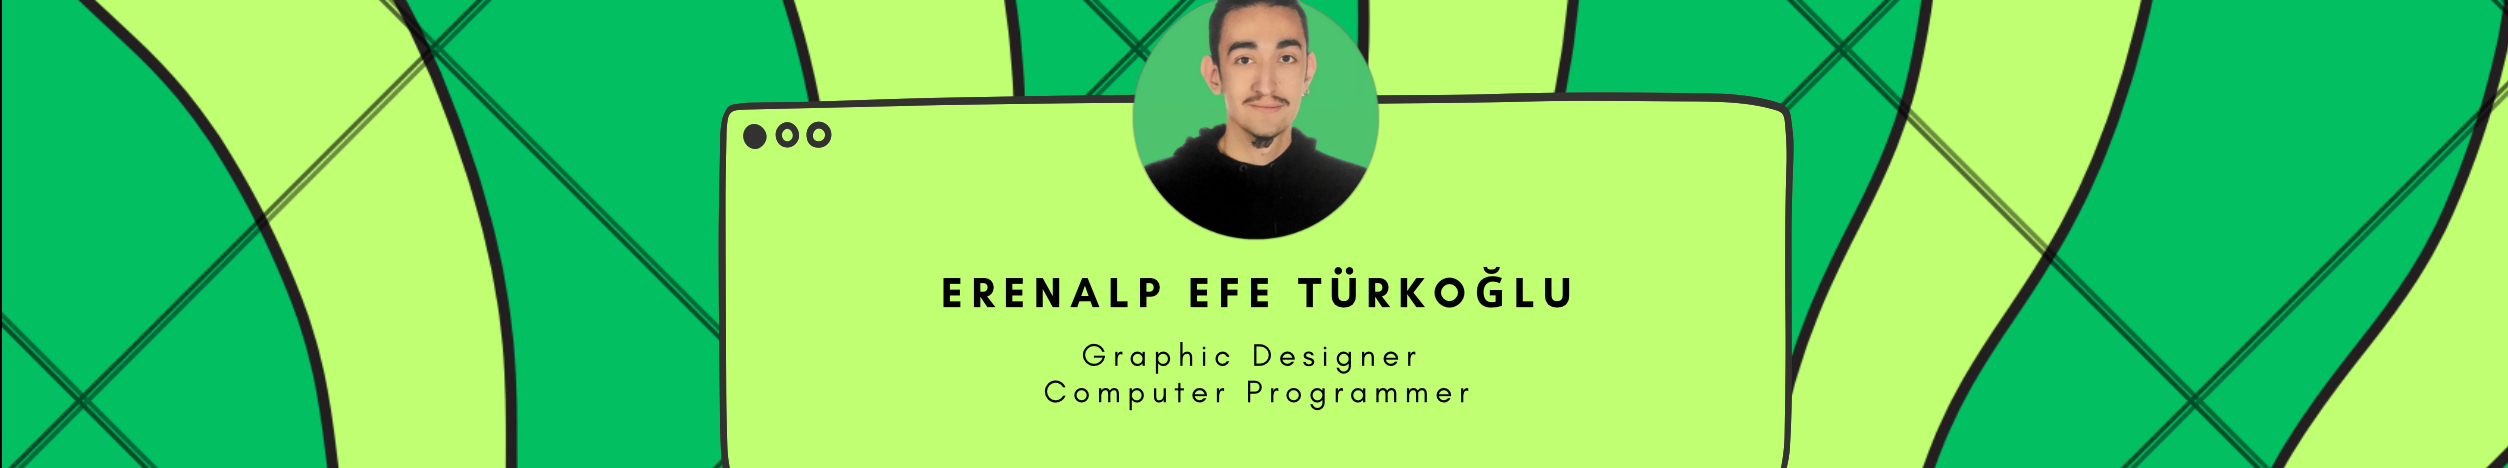 Erenalp Efe Türkoğlu's profile banner